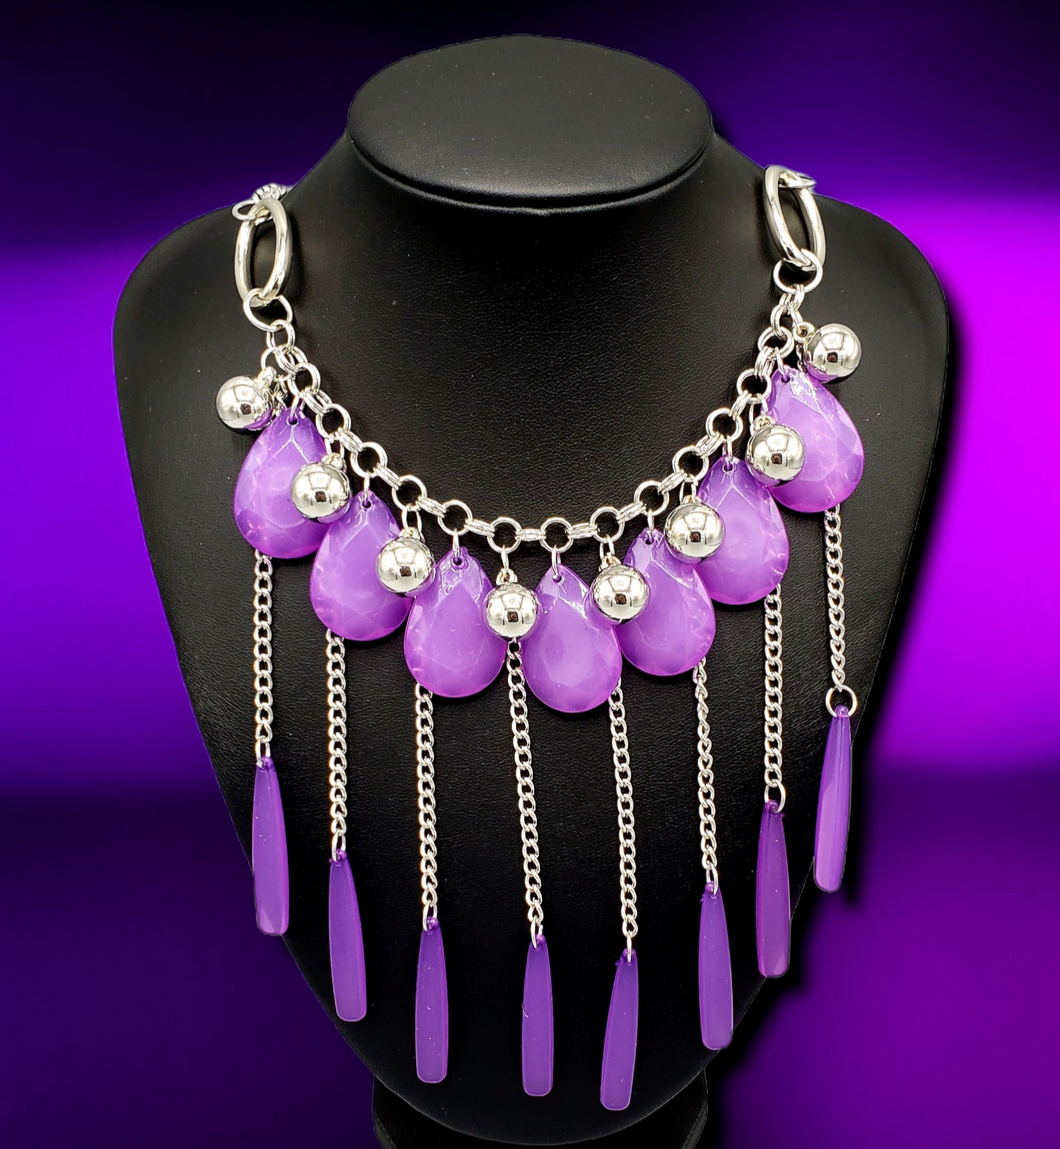 Roaring Riviera Purple Necklace Earrings